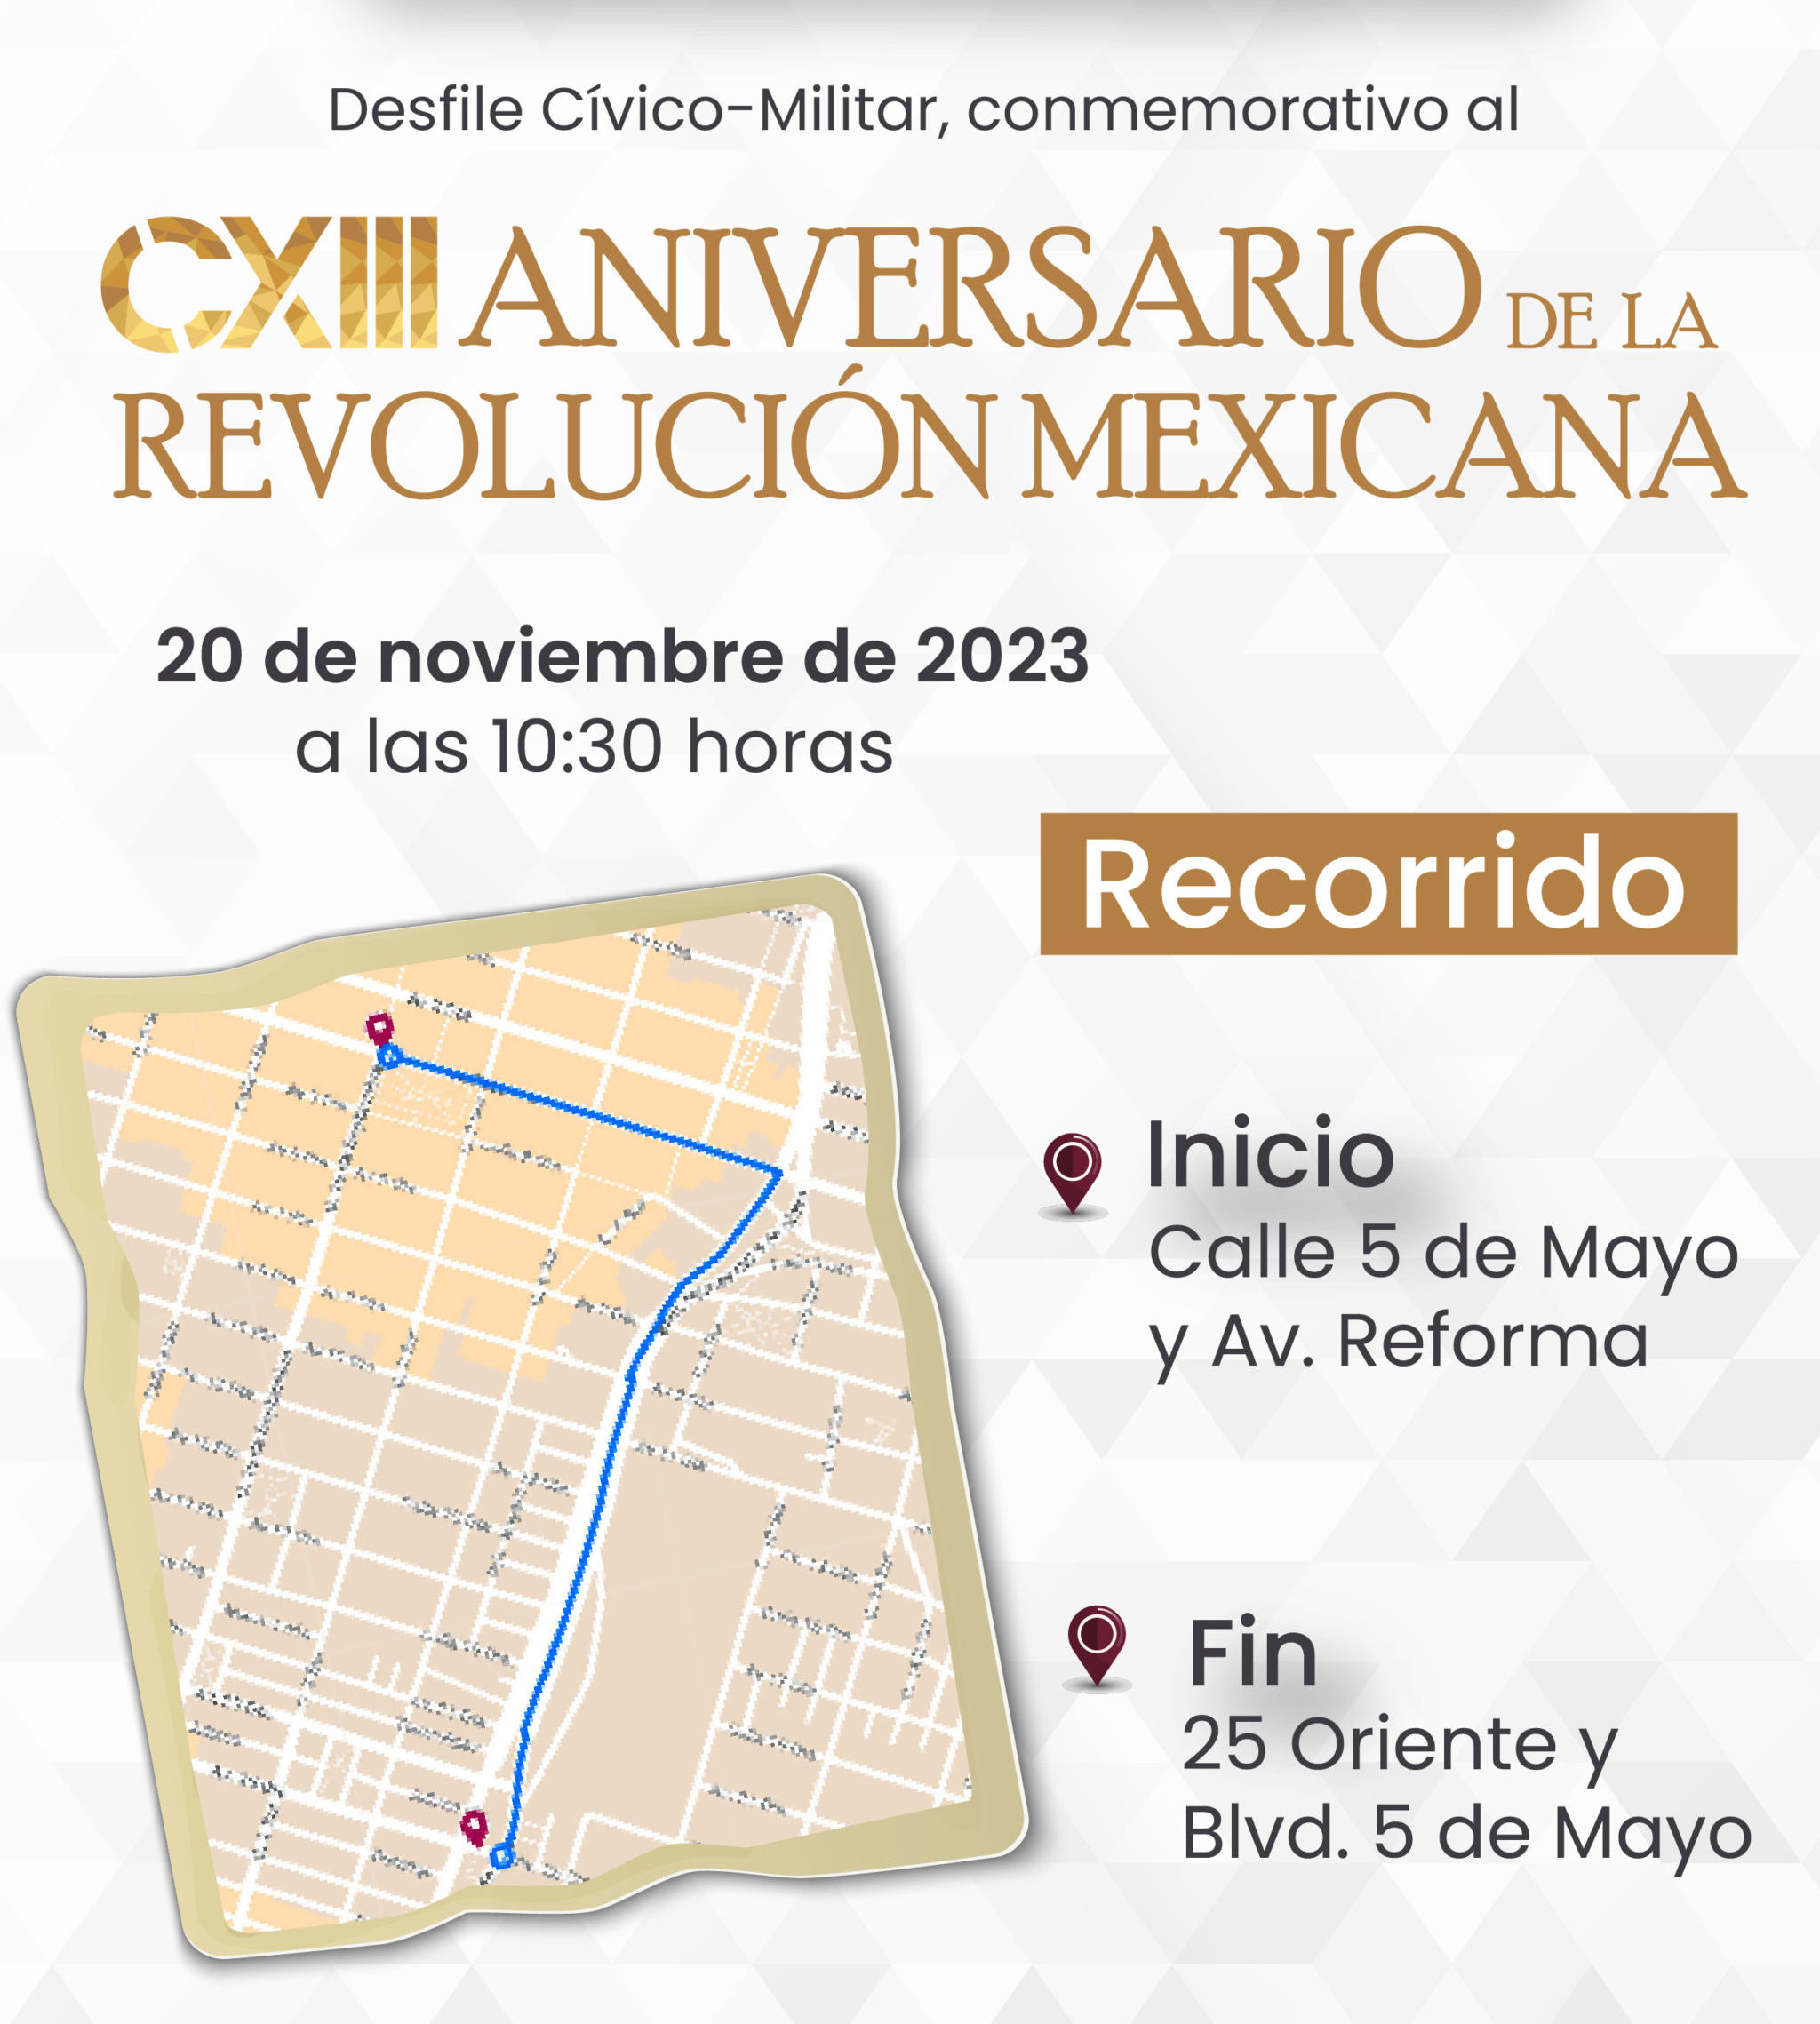 Desfile Revolución Méxicana